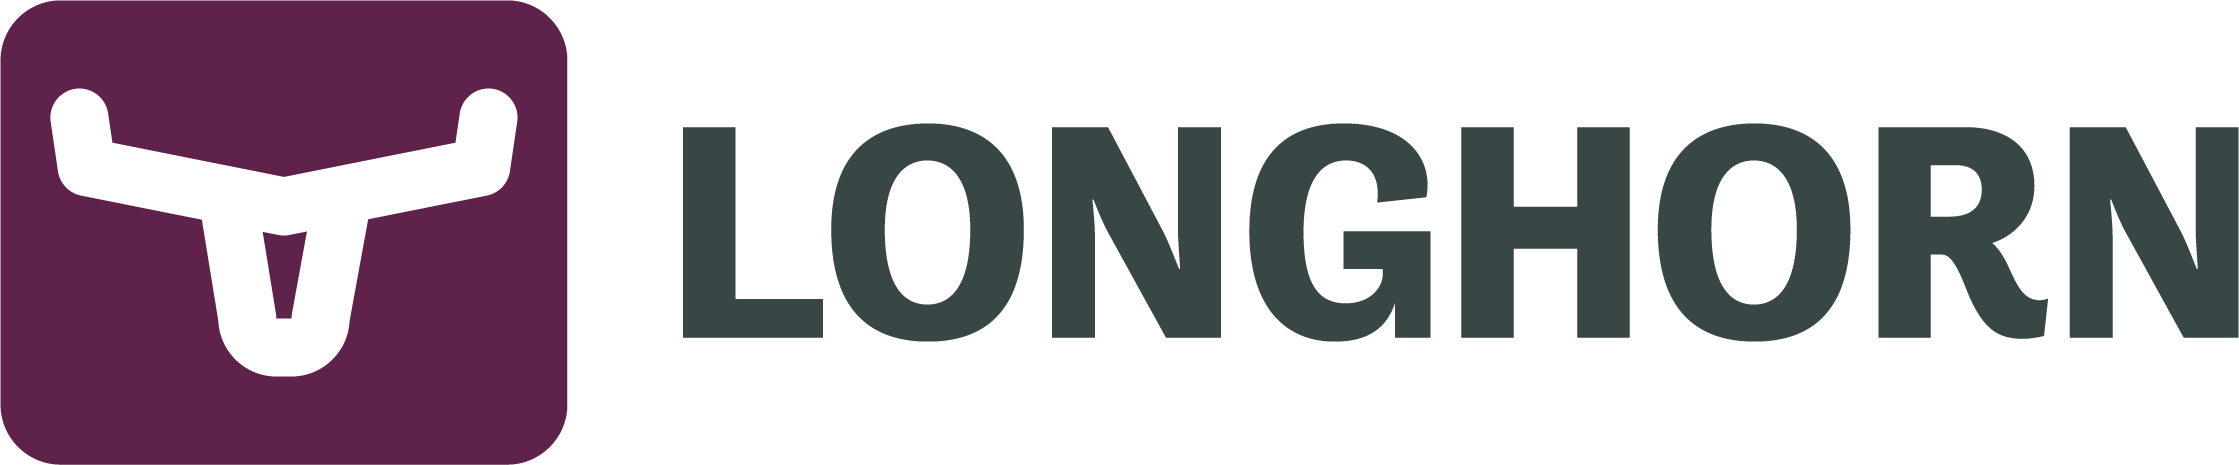 Longhorn navbar logo